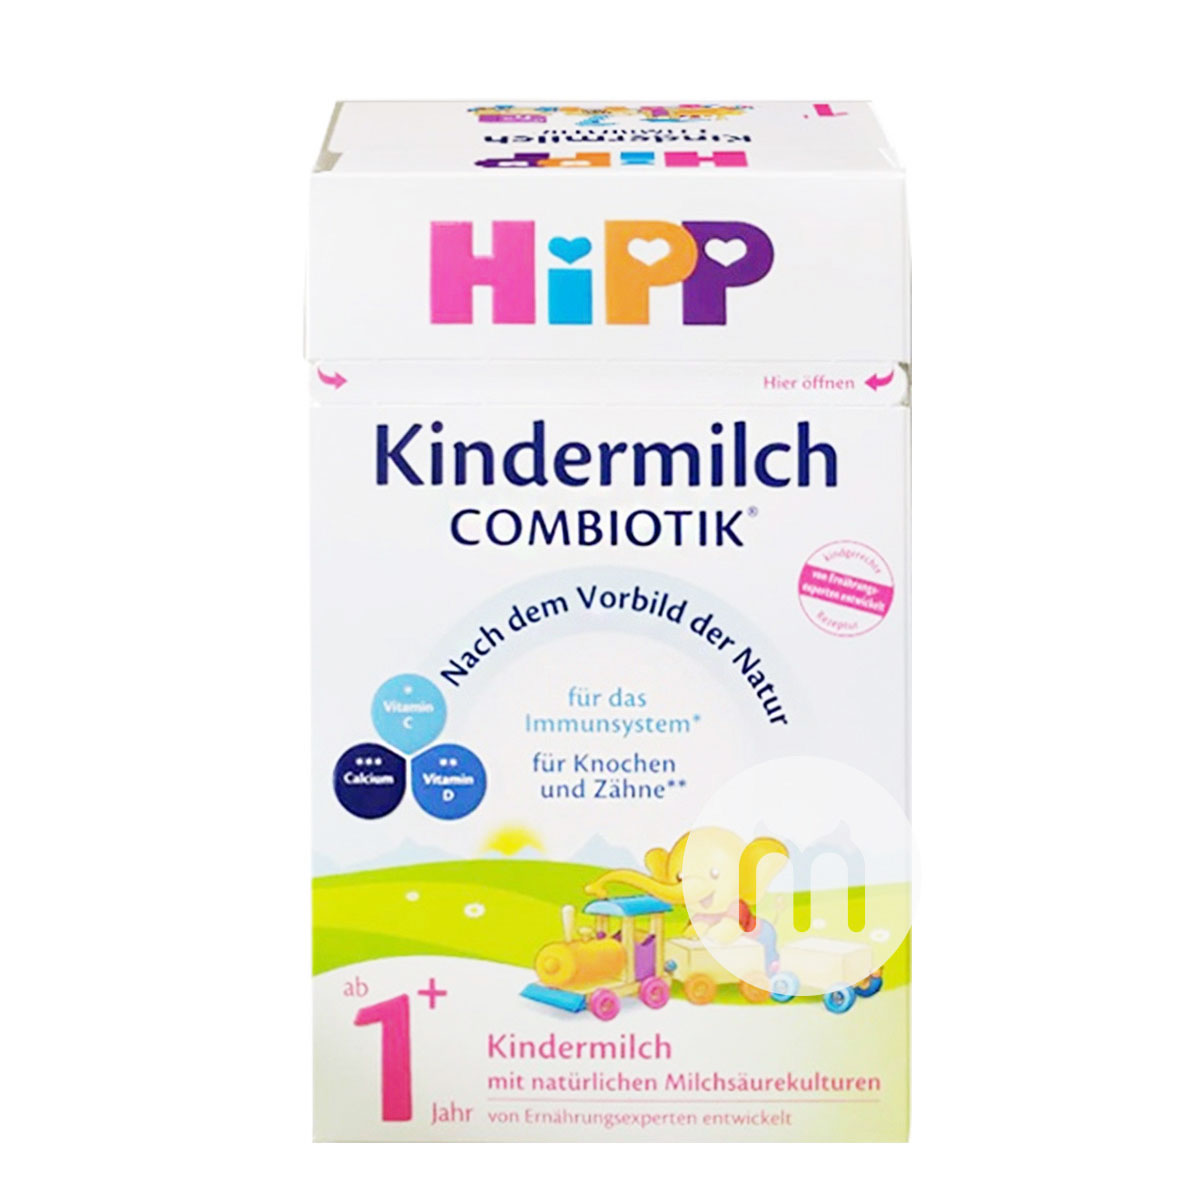 HiPP 德國喜寶益生菌奶粉4段*4盒 海外本土原版